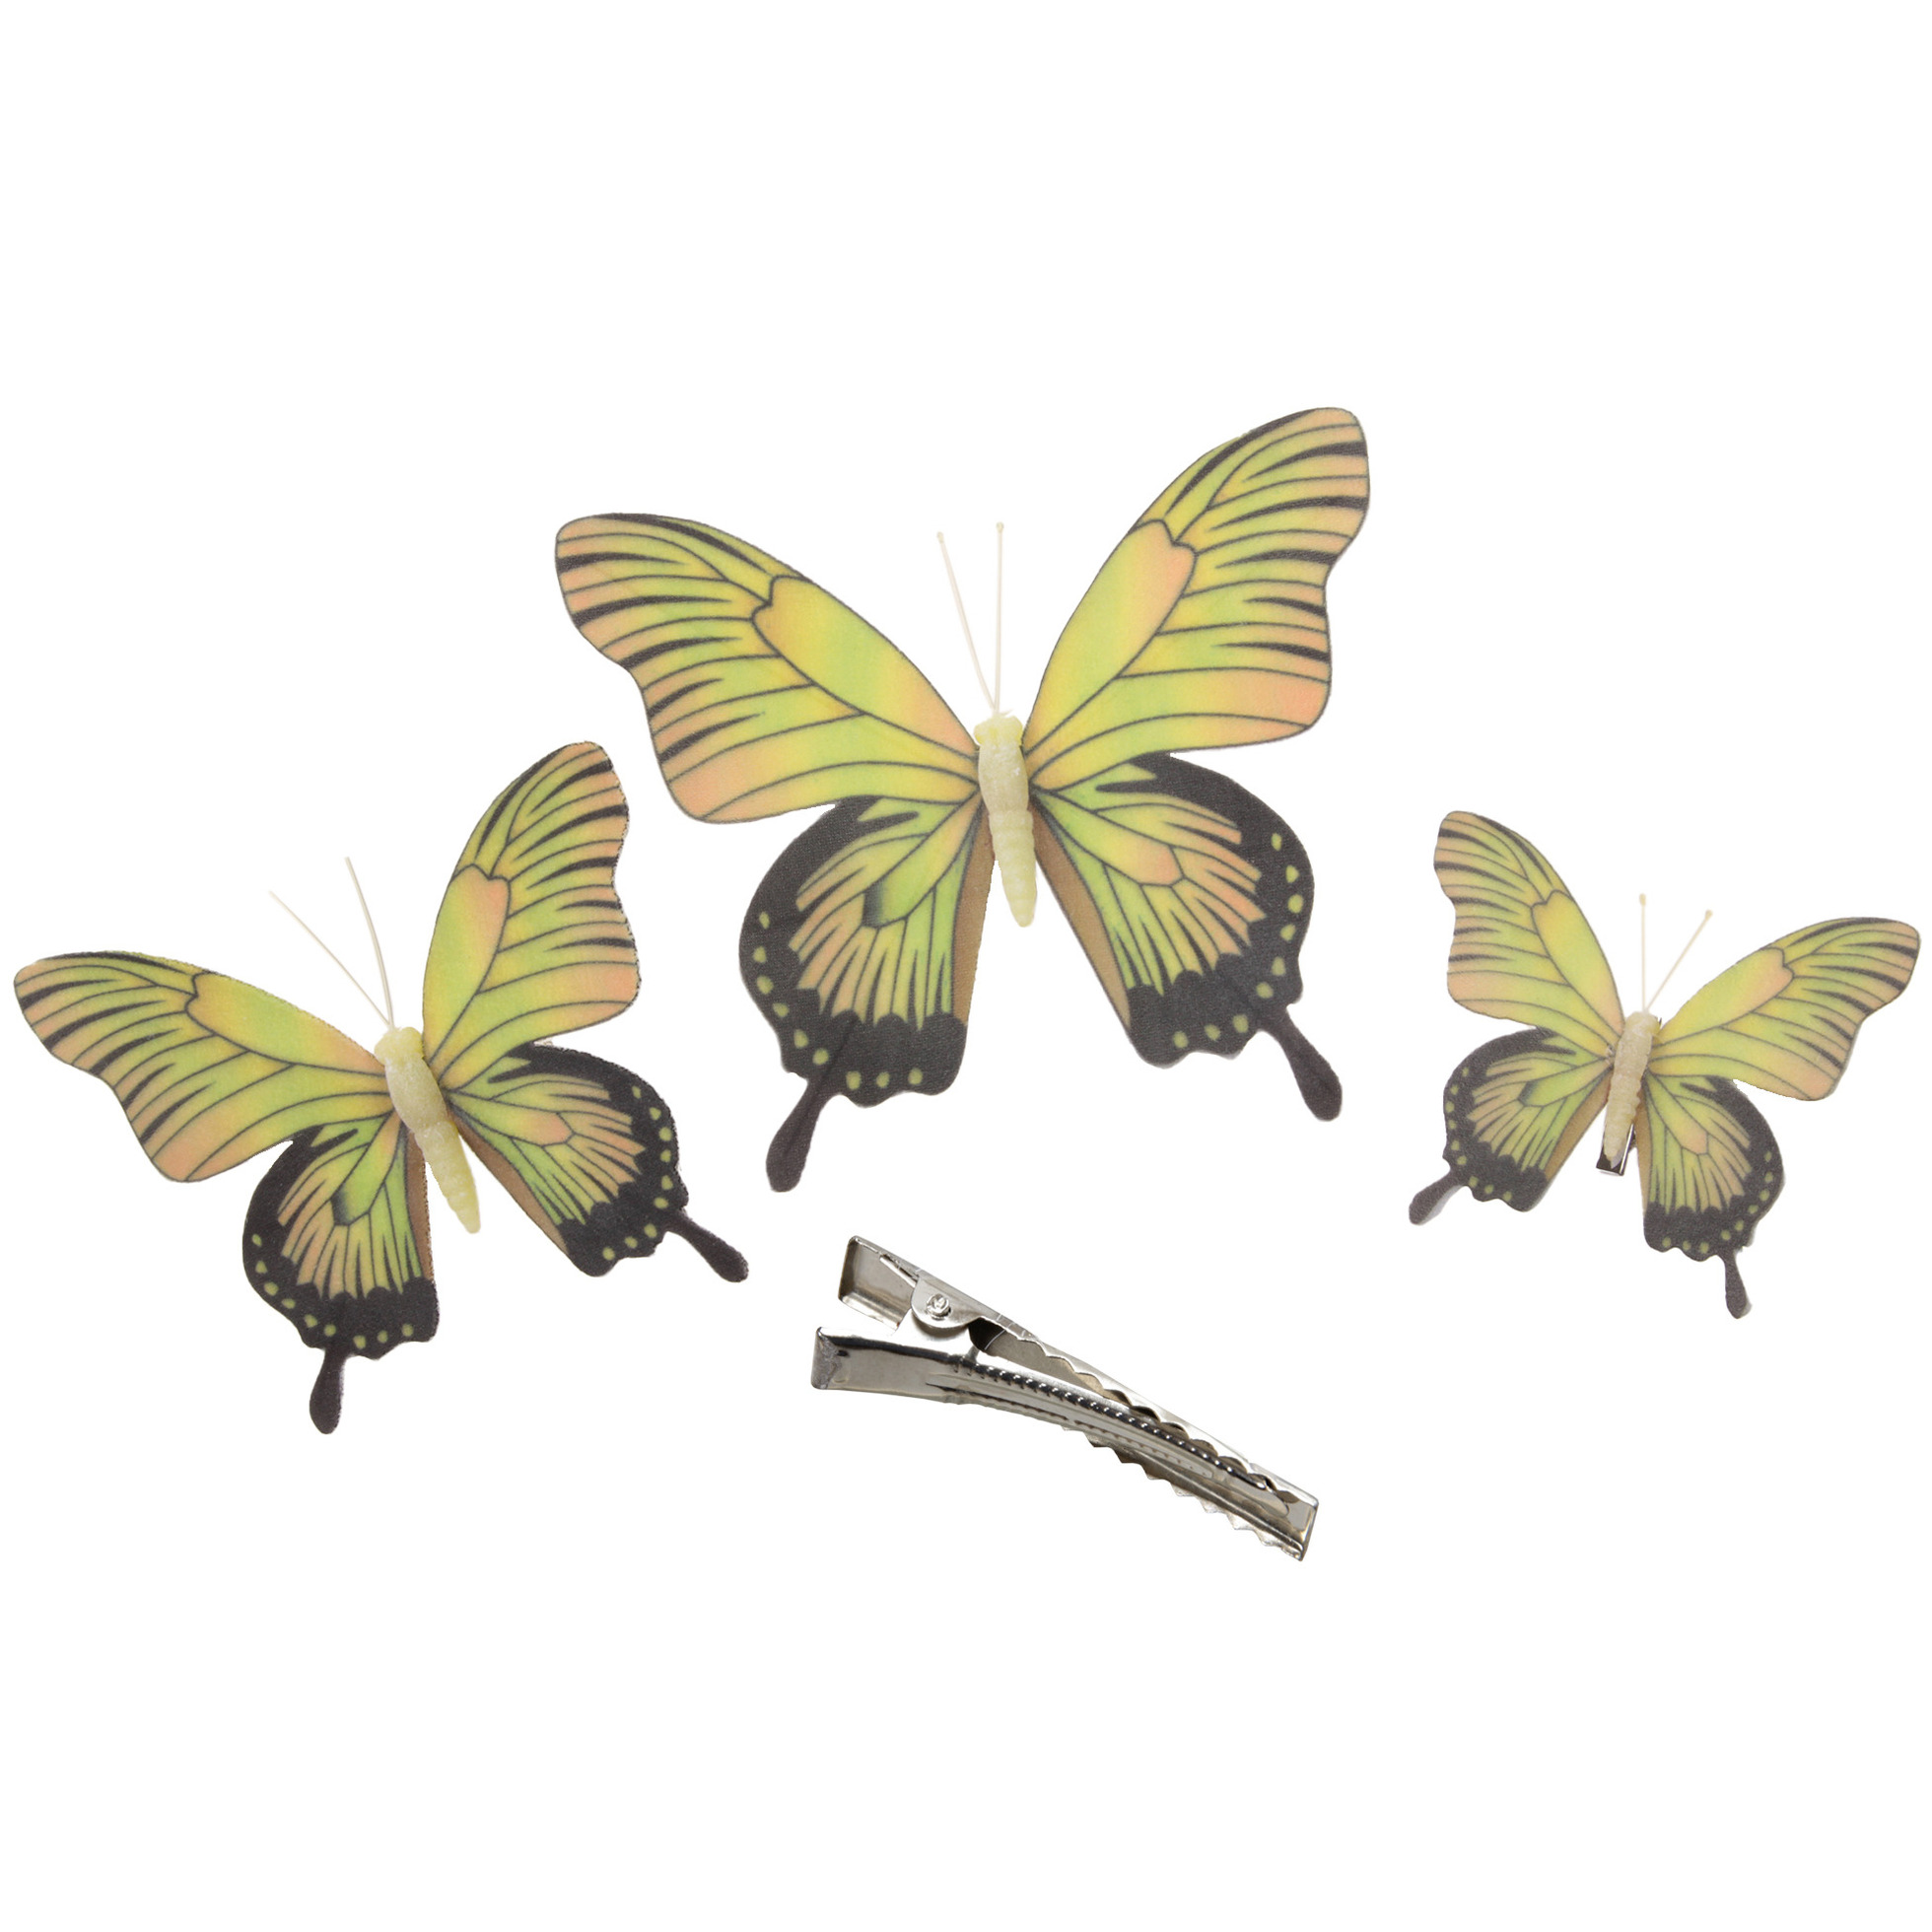 3x stuks decoratie vlinders op clip geel 3 formaten 12-16-20 cm